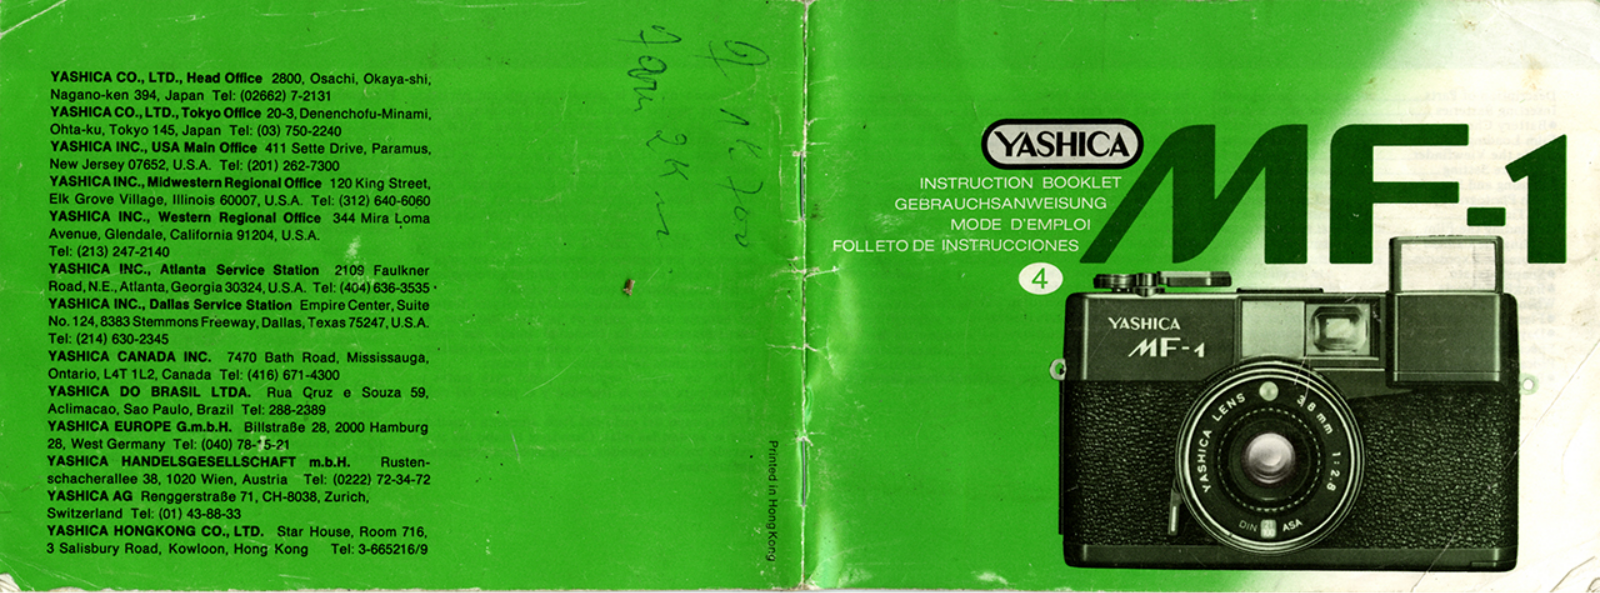 Yashica MF-1 Instruction Booklet